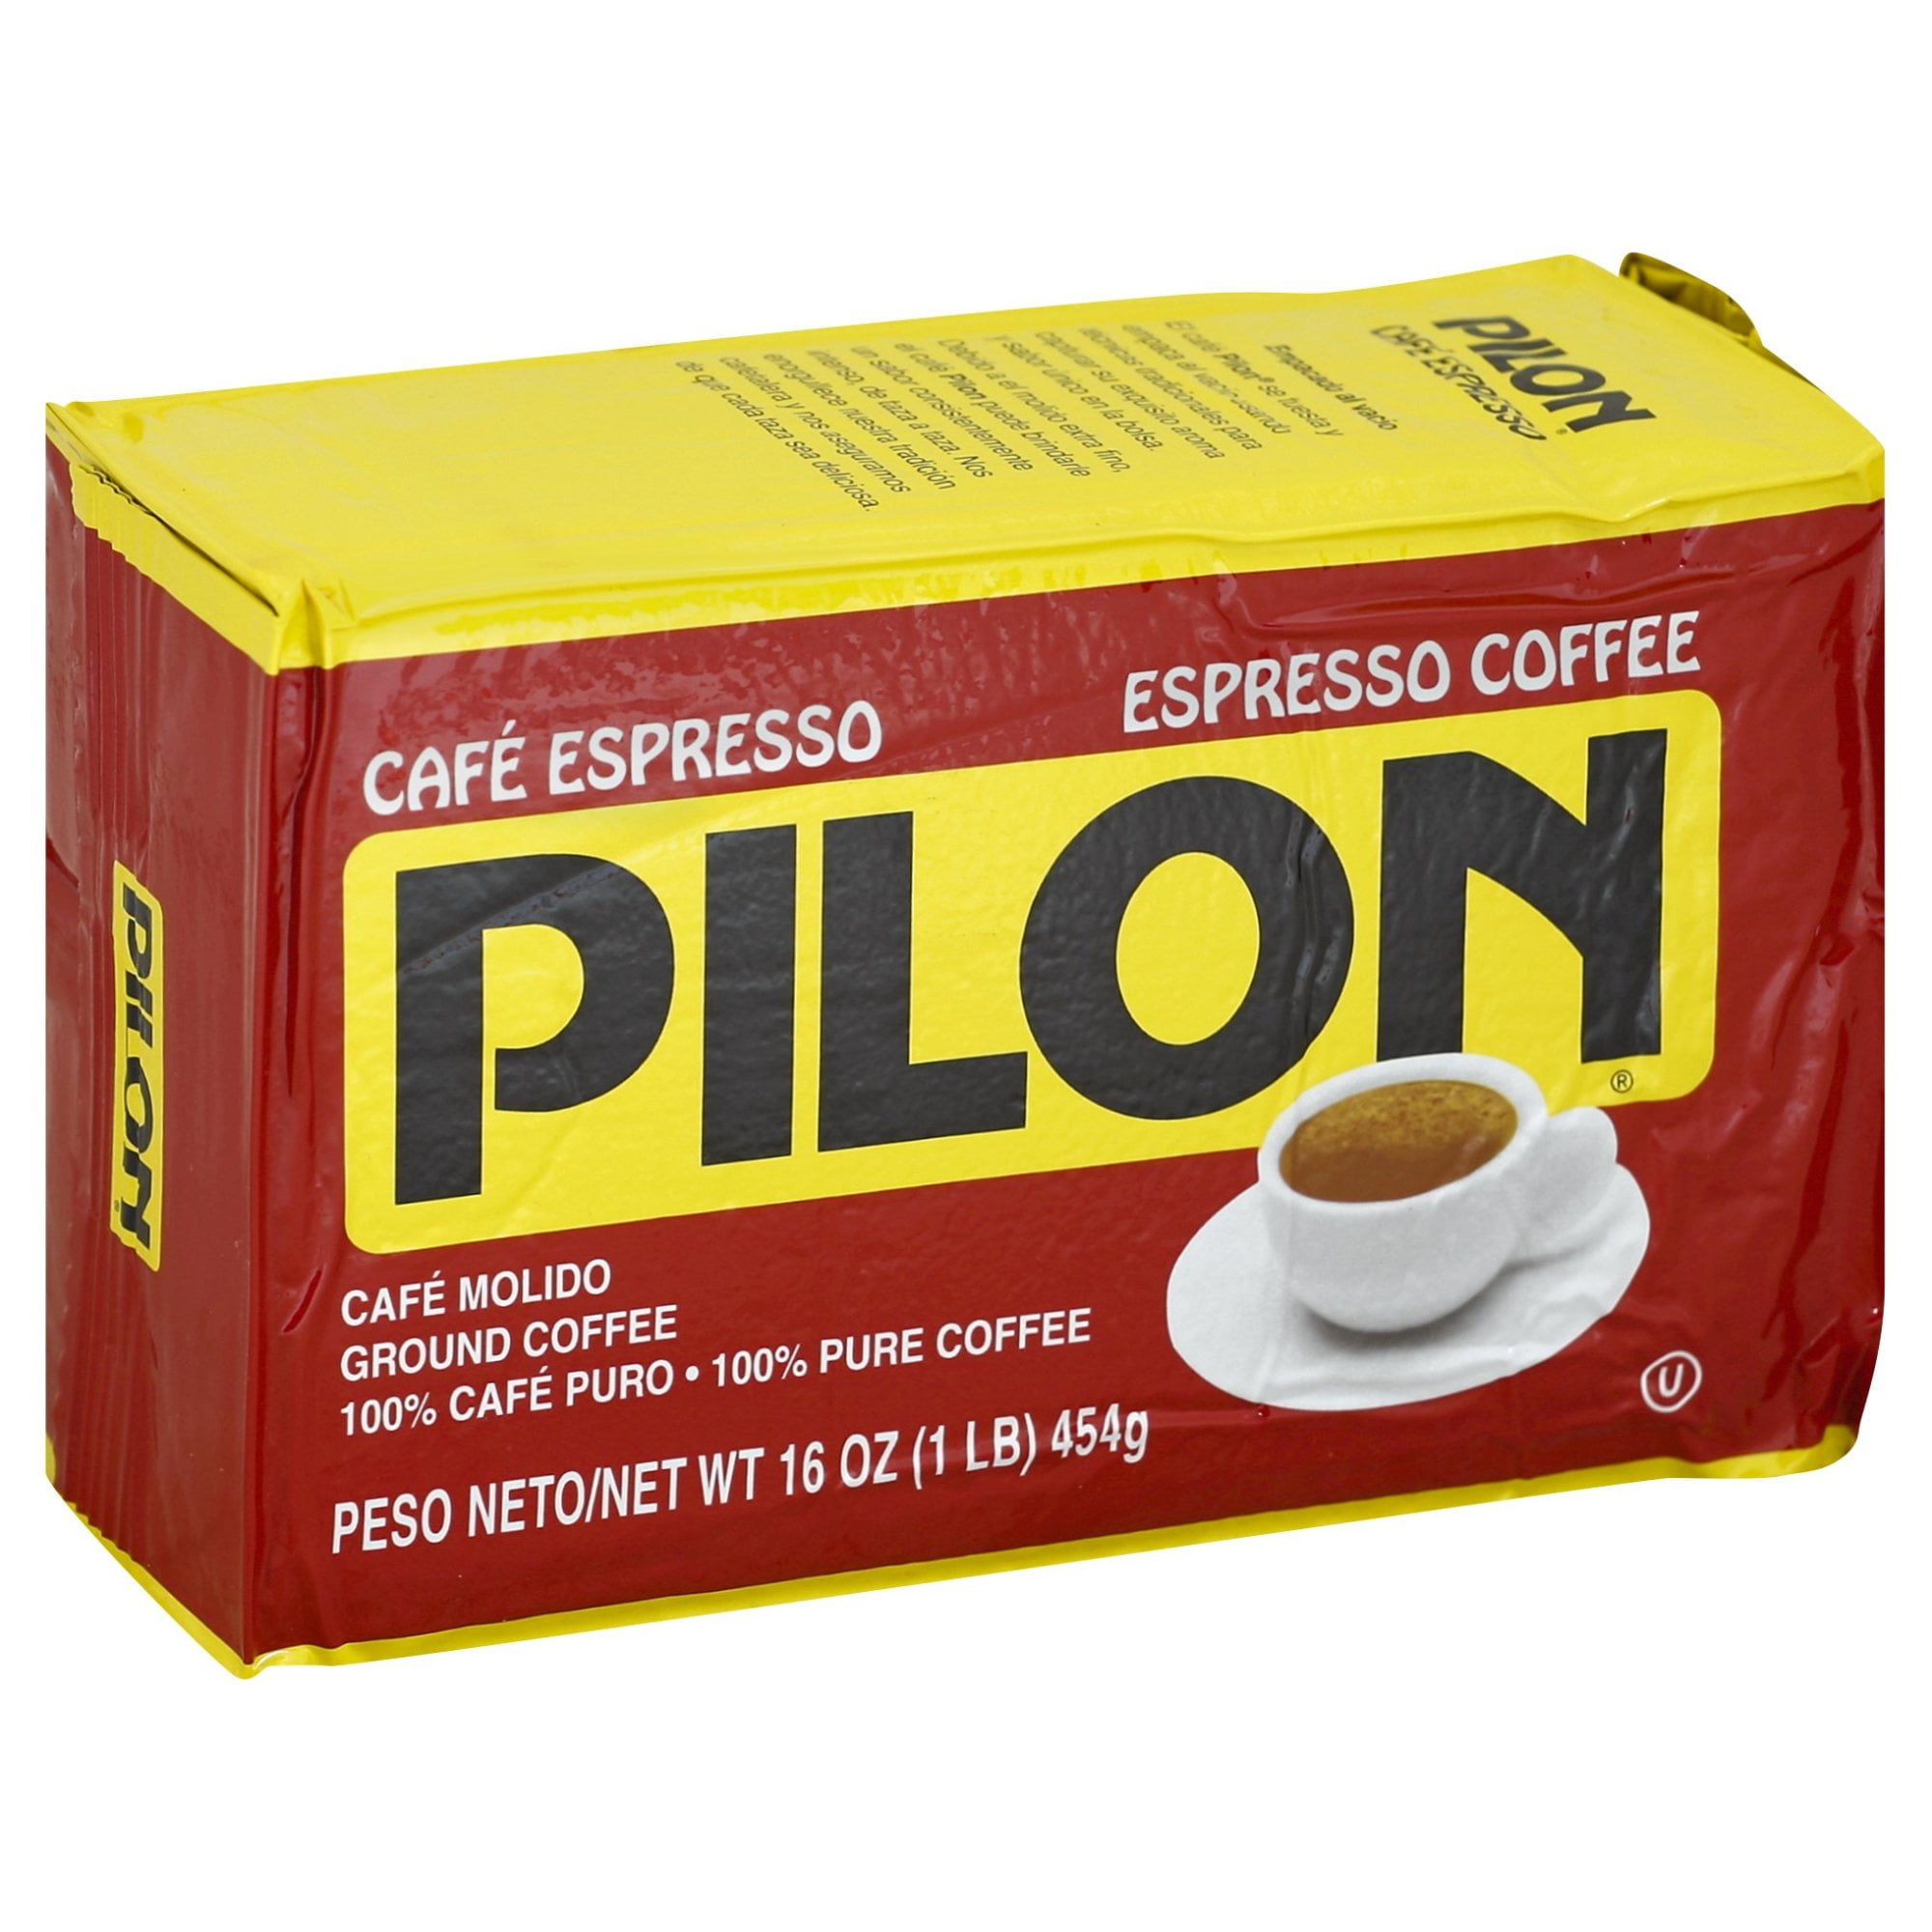 Café Pilon Espresso Ground Coffee Canister, 36 Ounce